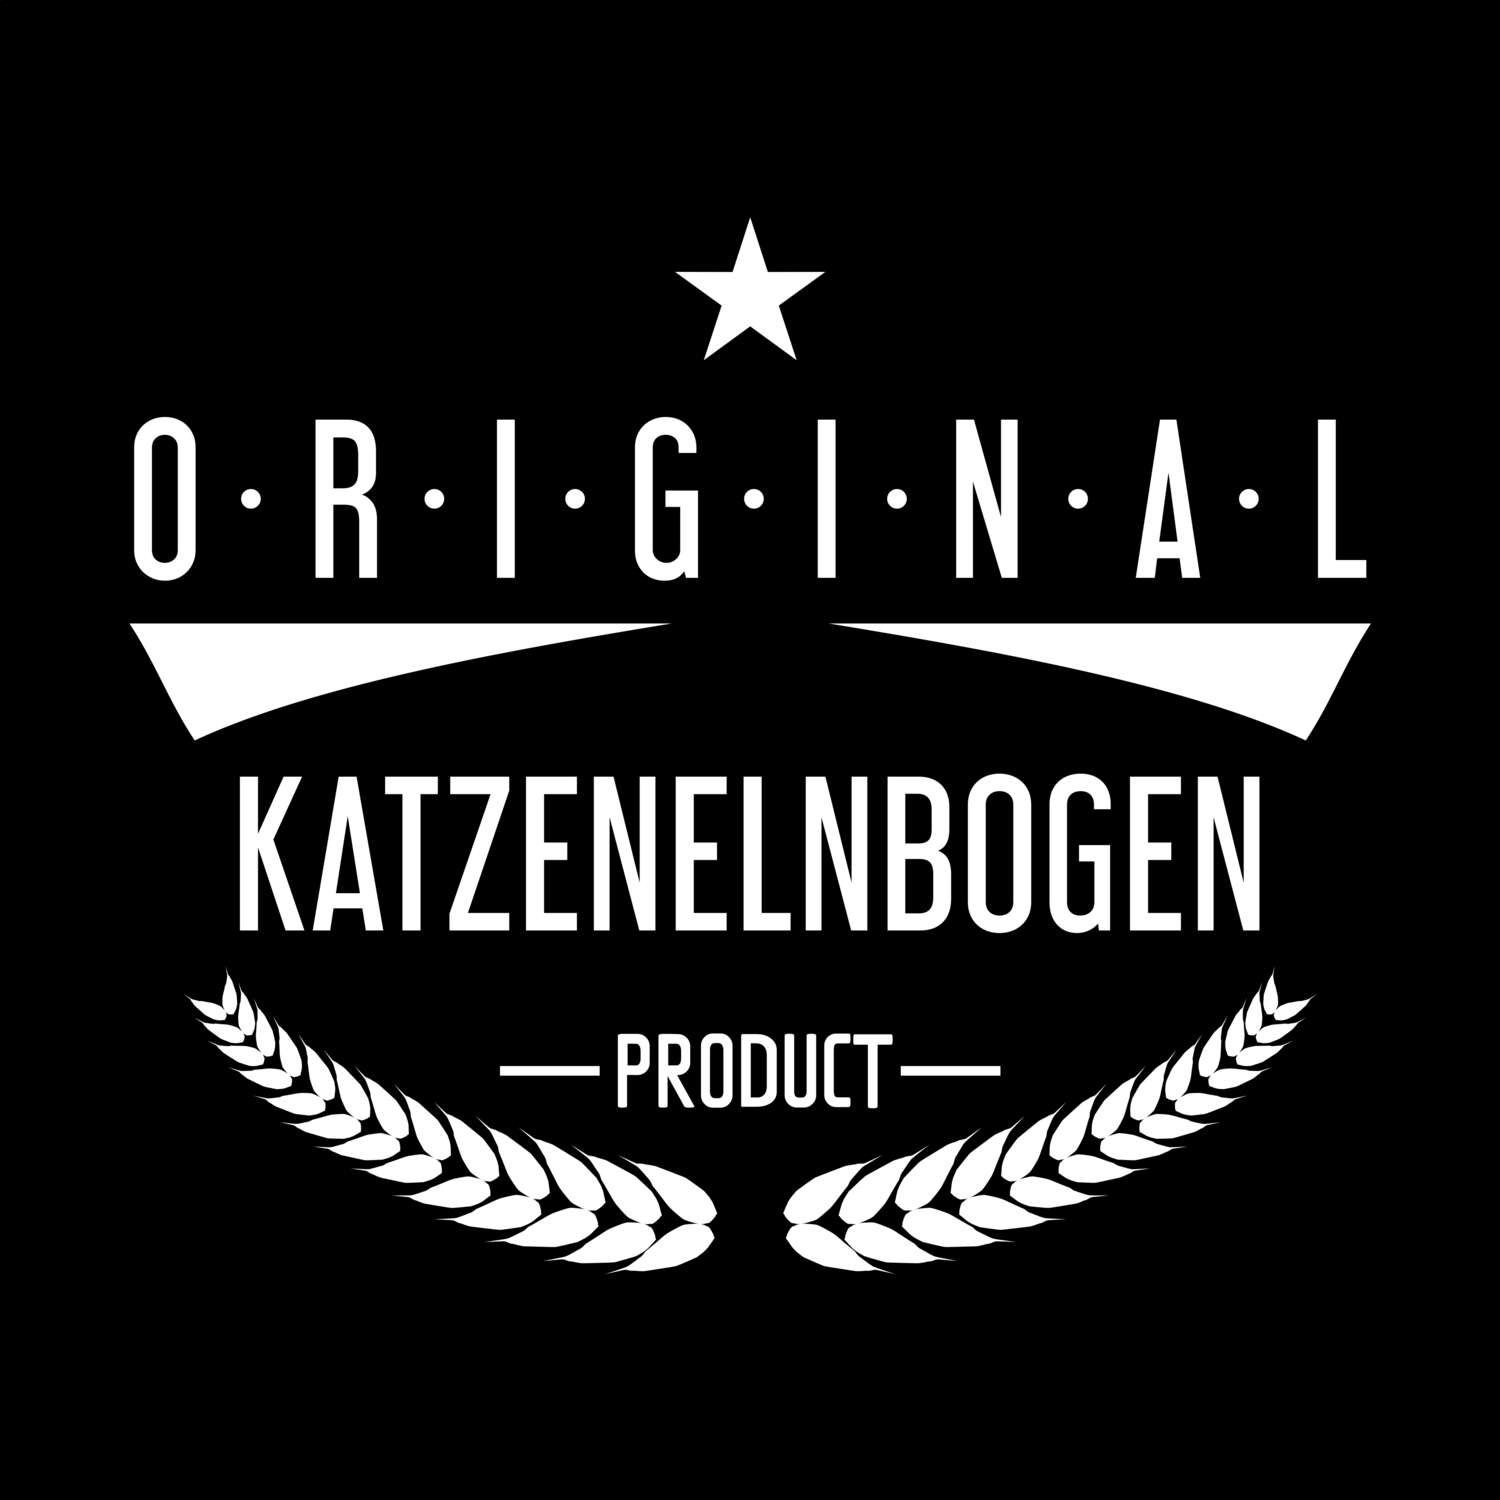 Katzenelnbogen T-Shirt »Original Product«